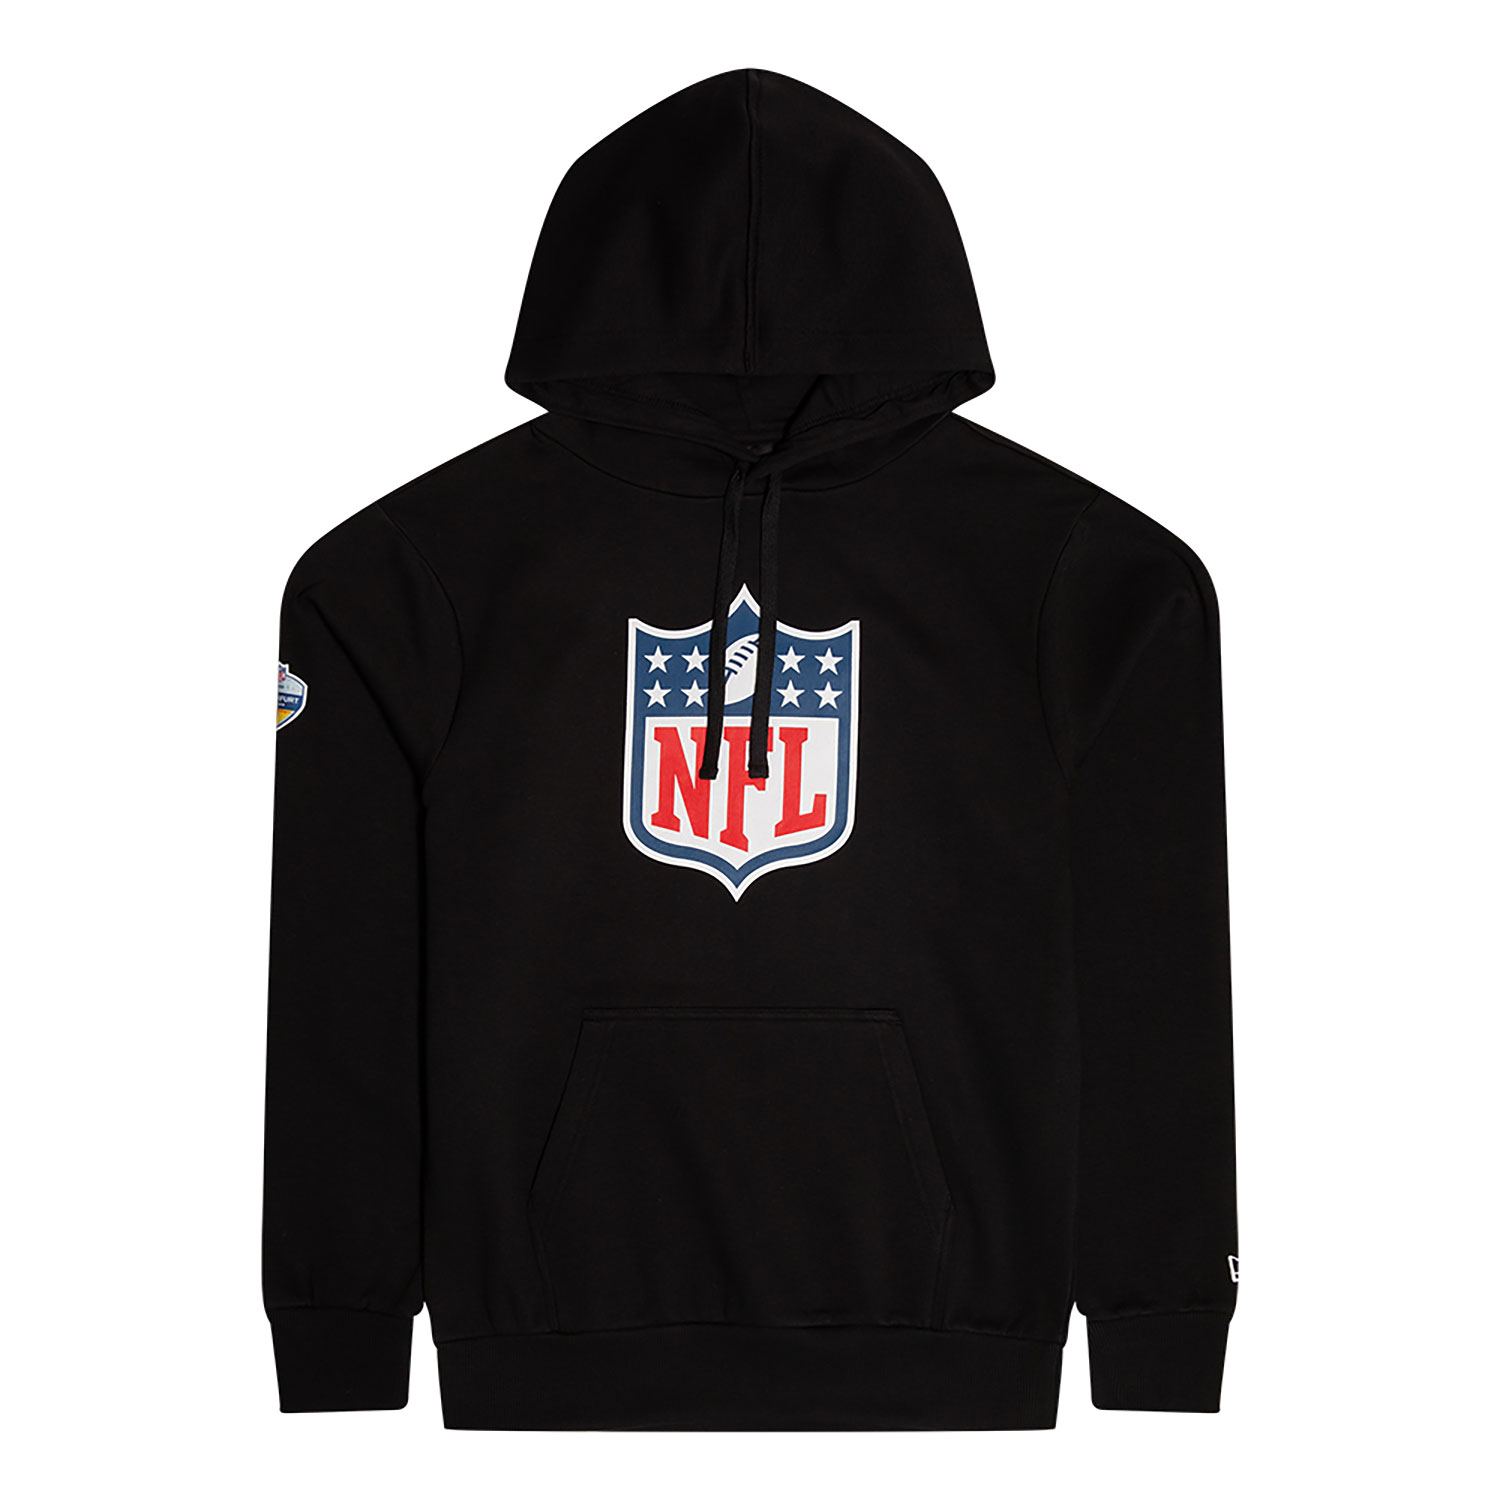 New Era New Orleans Saints NFL Black Pullover Hoodie Sweatshirt: